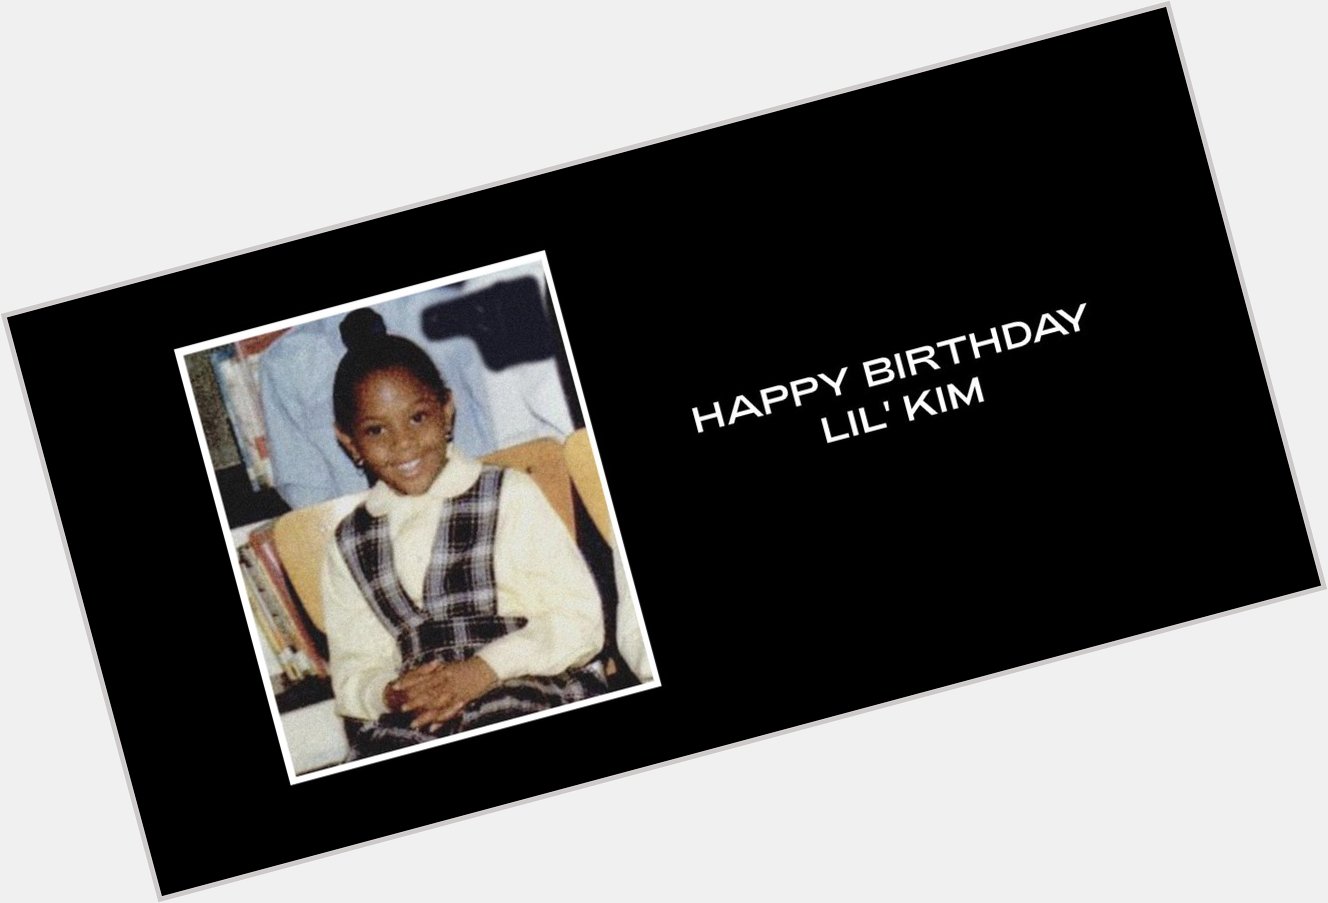 Beyoncé wished Lil Kim a happy birthday. 